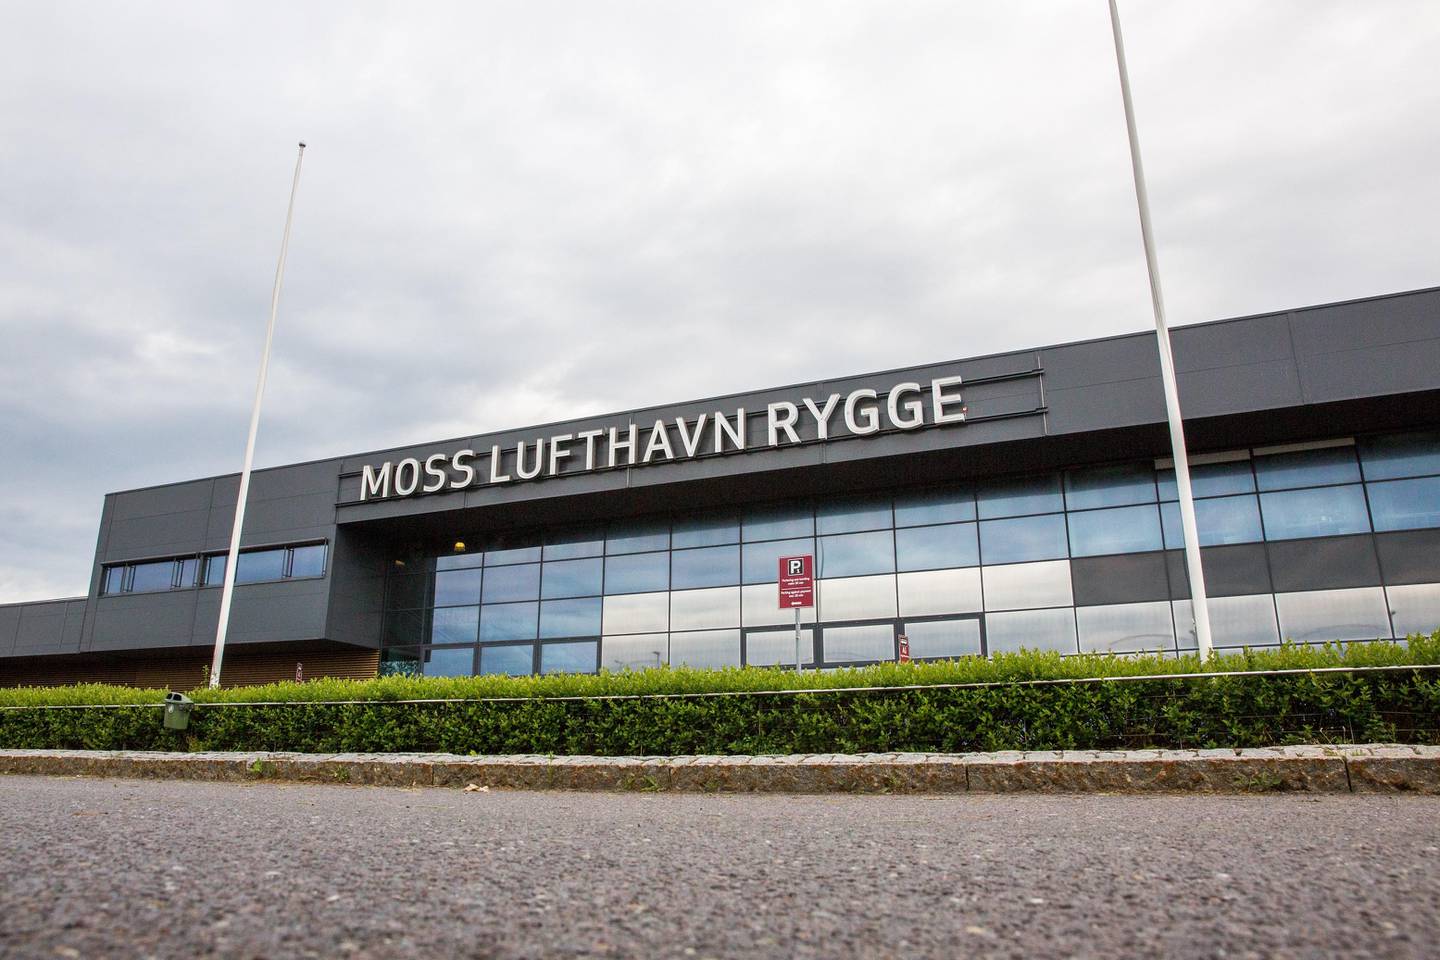 Moss lufthavn Rygge stengte dørene i 2016. Siden da har terminalbygget stått tomt. Året før var det 1,64 millioner passasjerer innom her.